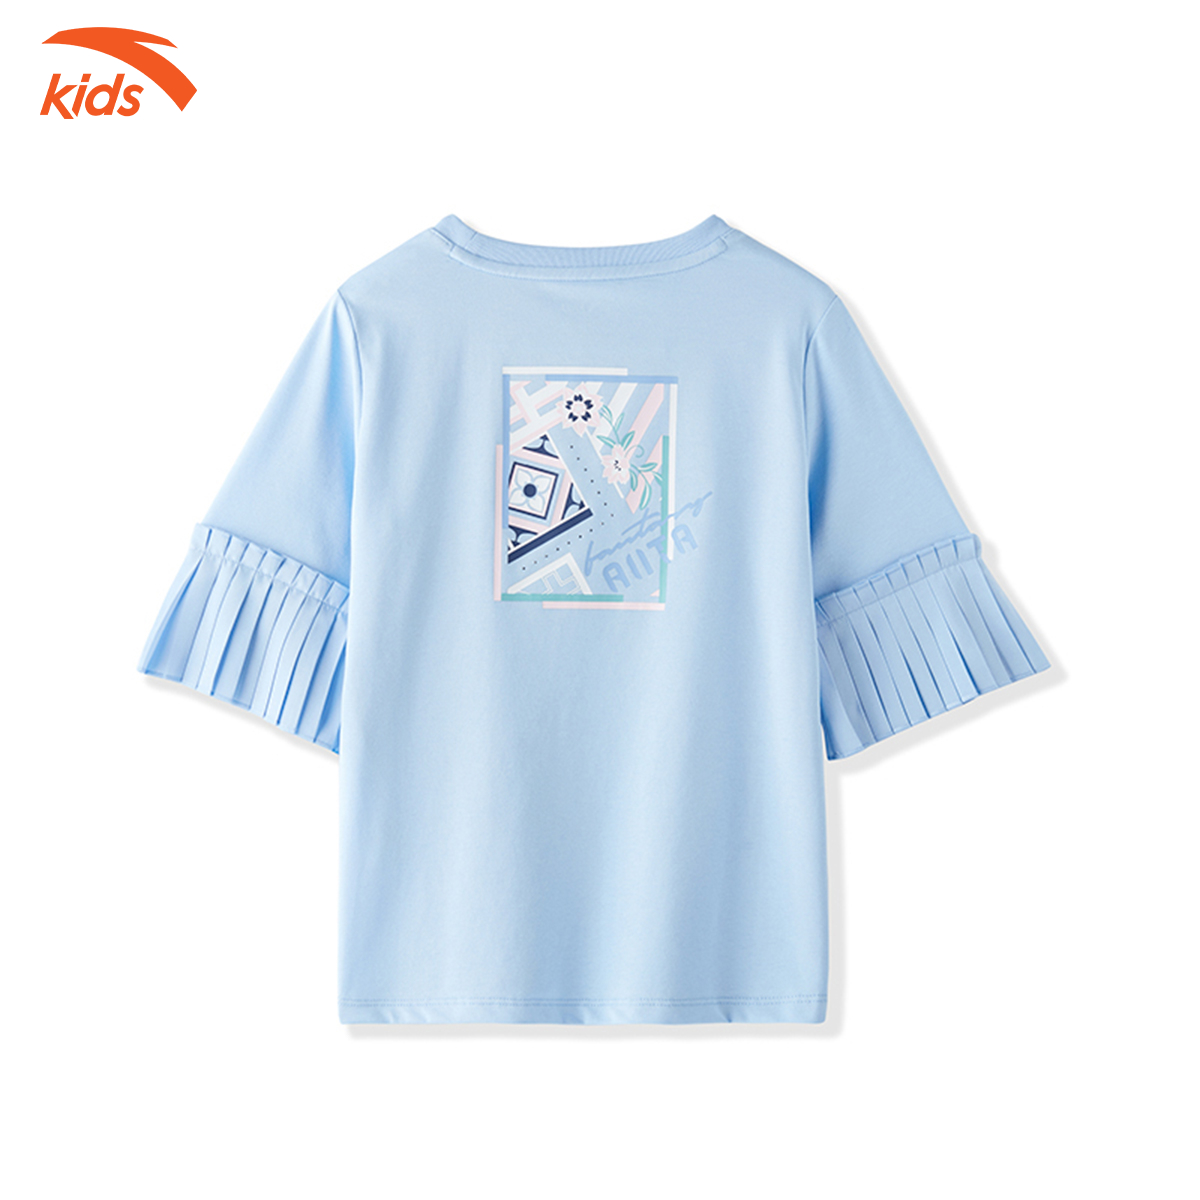 Áo thun thời trang bé gái thương hiệu Anta Kids 362138141 vải tổng hợp, thoáng khí, co giãn 4 chiều